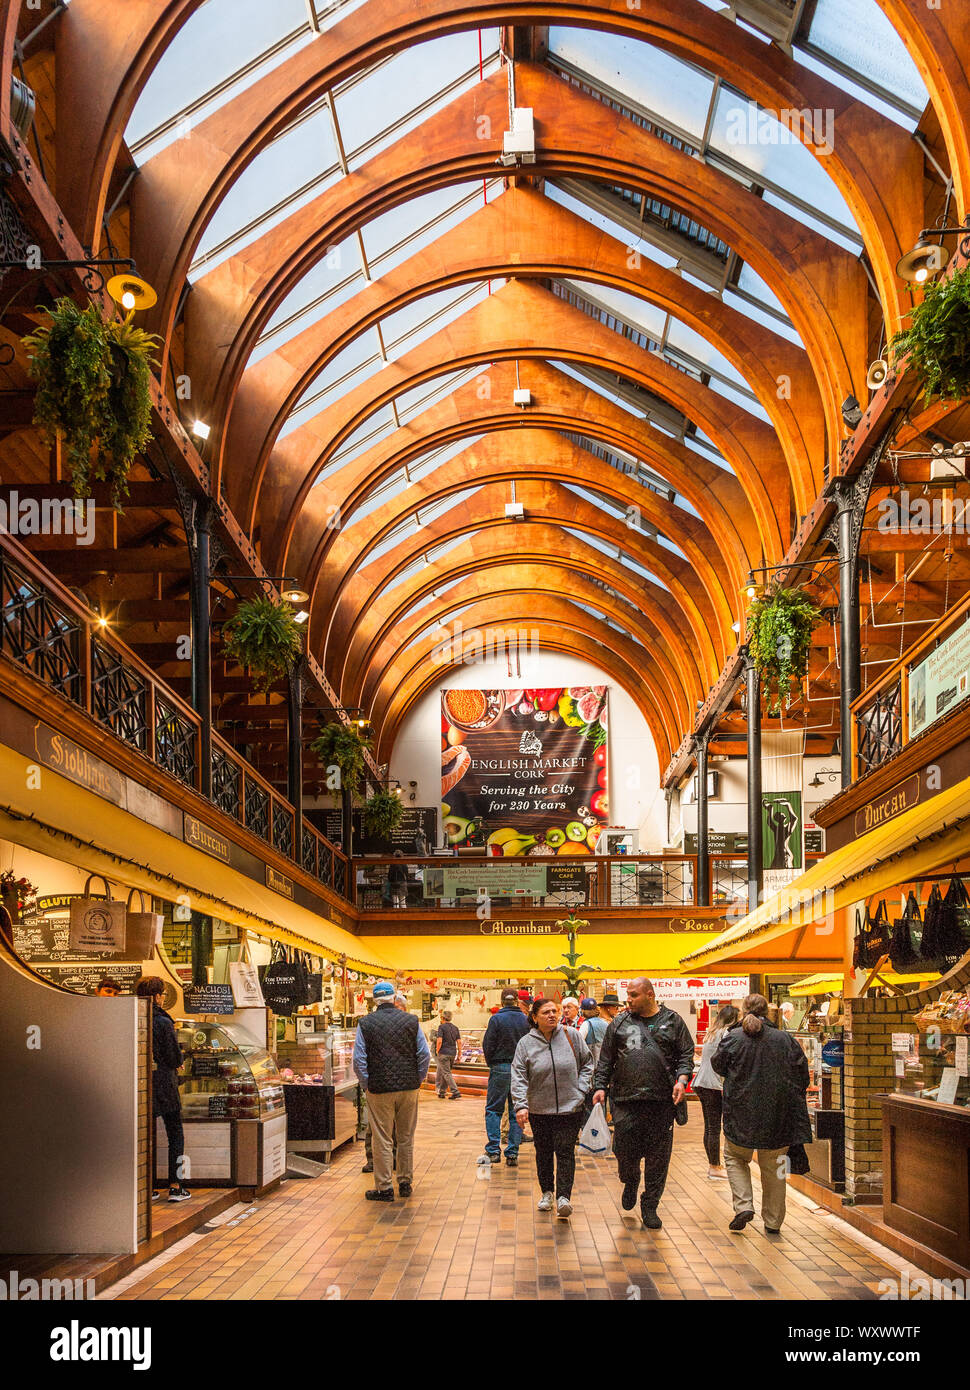 La ciudad de Cork, Cork, Irlanda. El 18 de septiembre, 2019. Interior del mercado inglés, una famosa atracción turística de la ciudad, con estantes con freesh Foto de stock